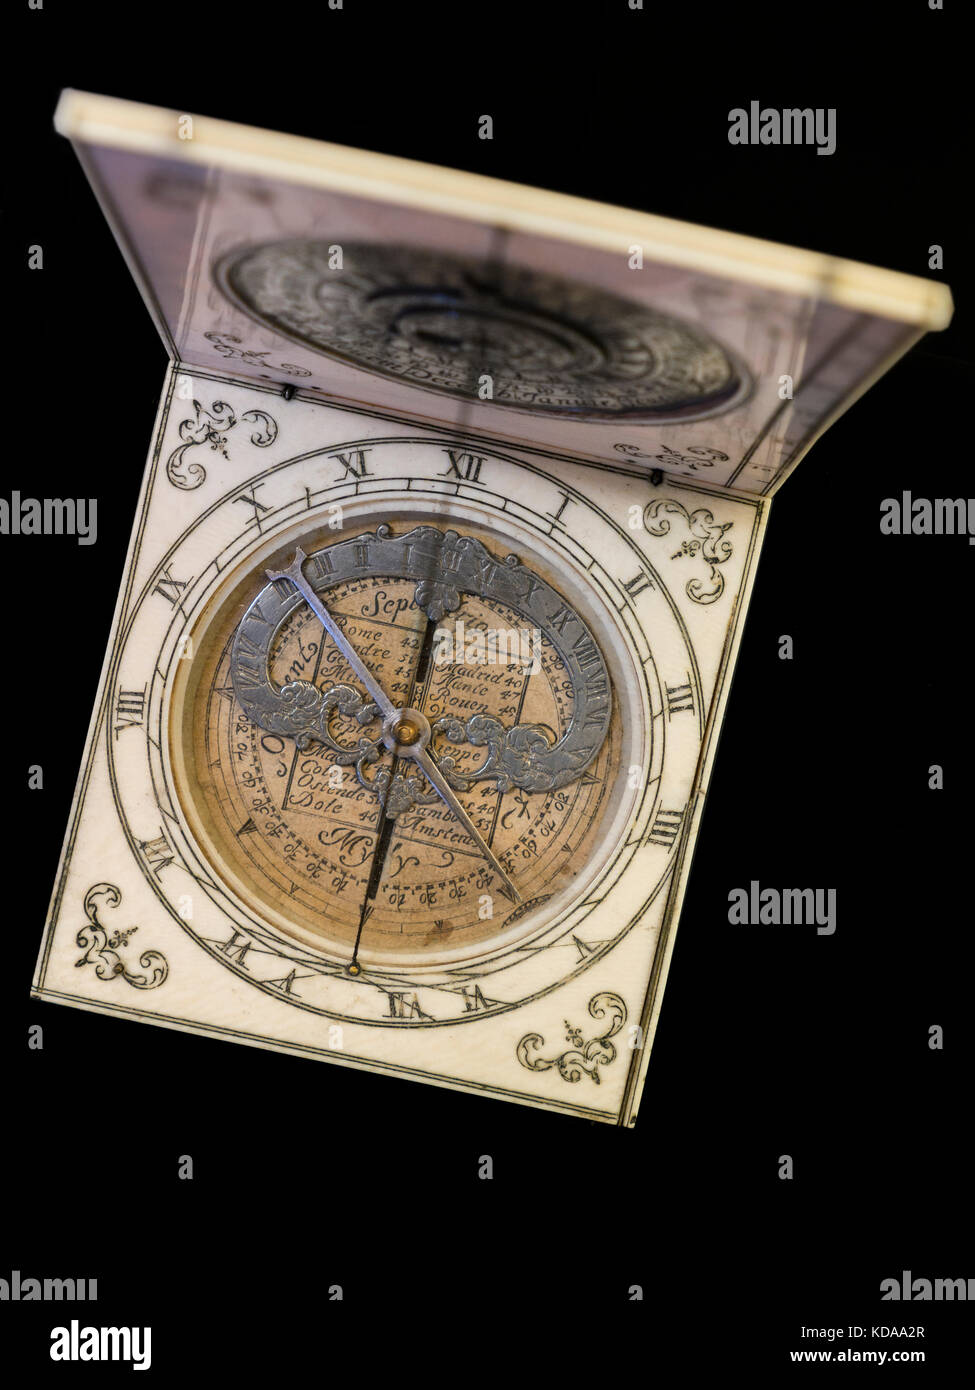 BRÚJULA DE MARFIL ‘CADRAN DE DIEPPE’ histórica clásica brújula de bolsillo de marfil portátil de 1670 hecha en Dieppe Francia por Gabriel Bloud Foto de stock